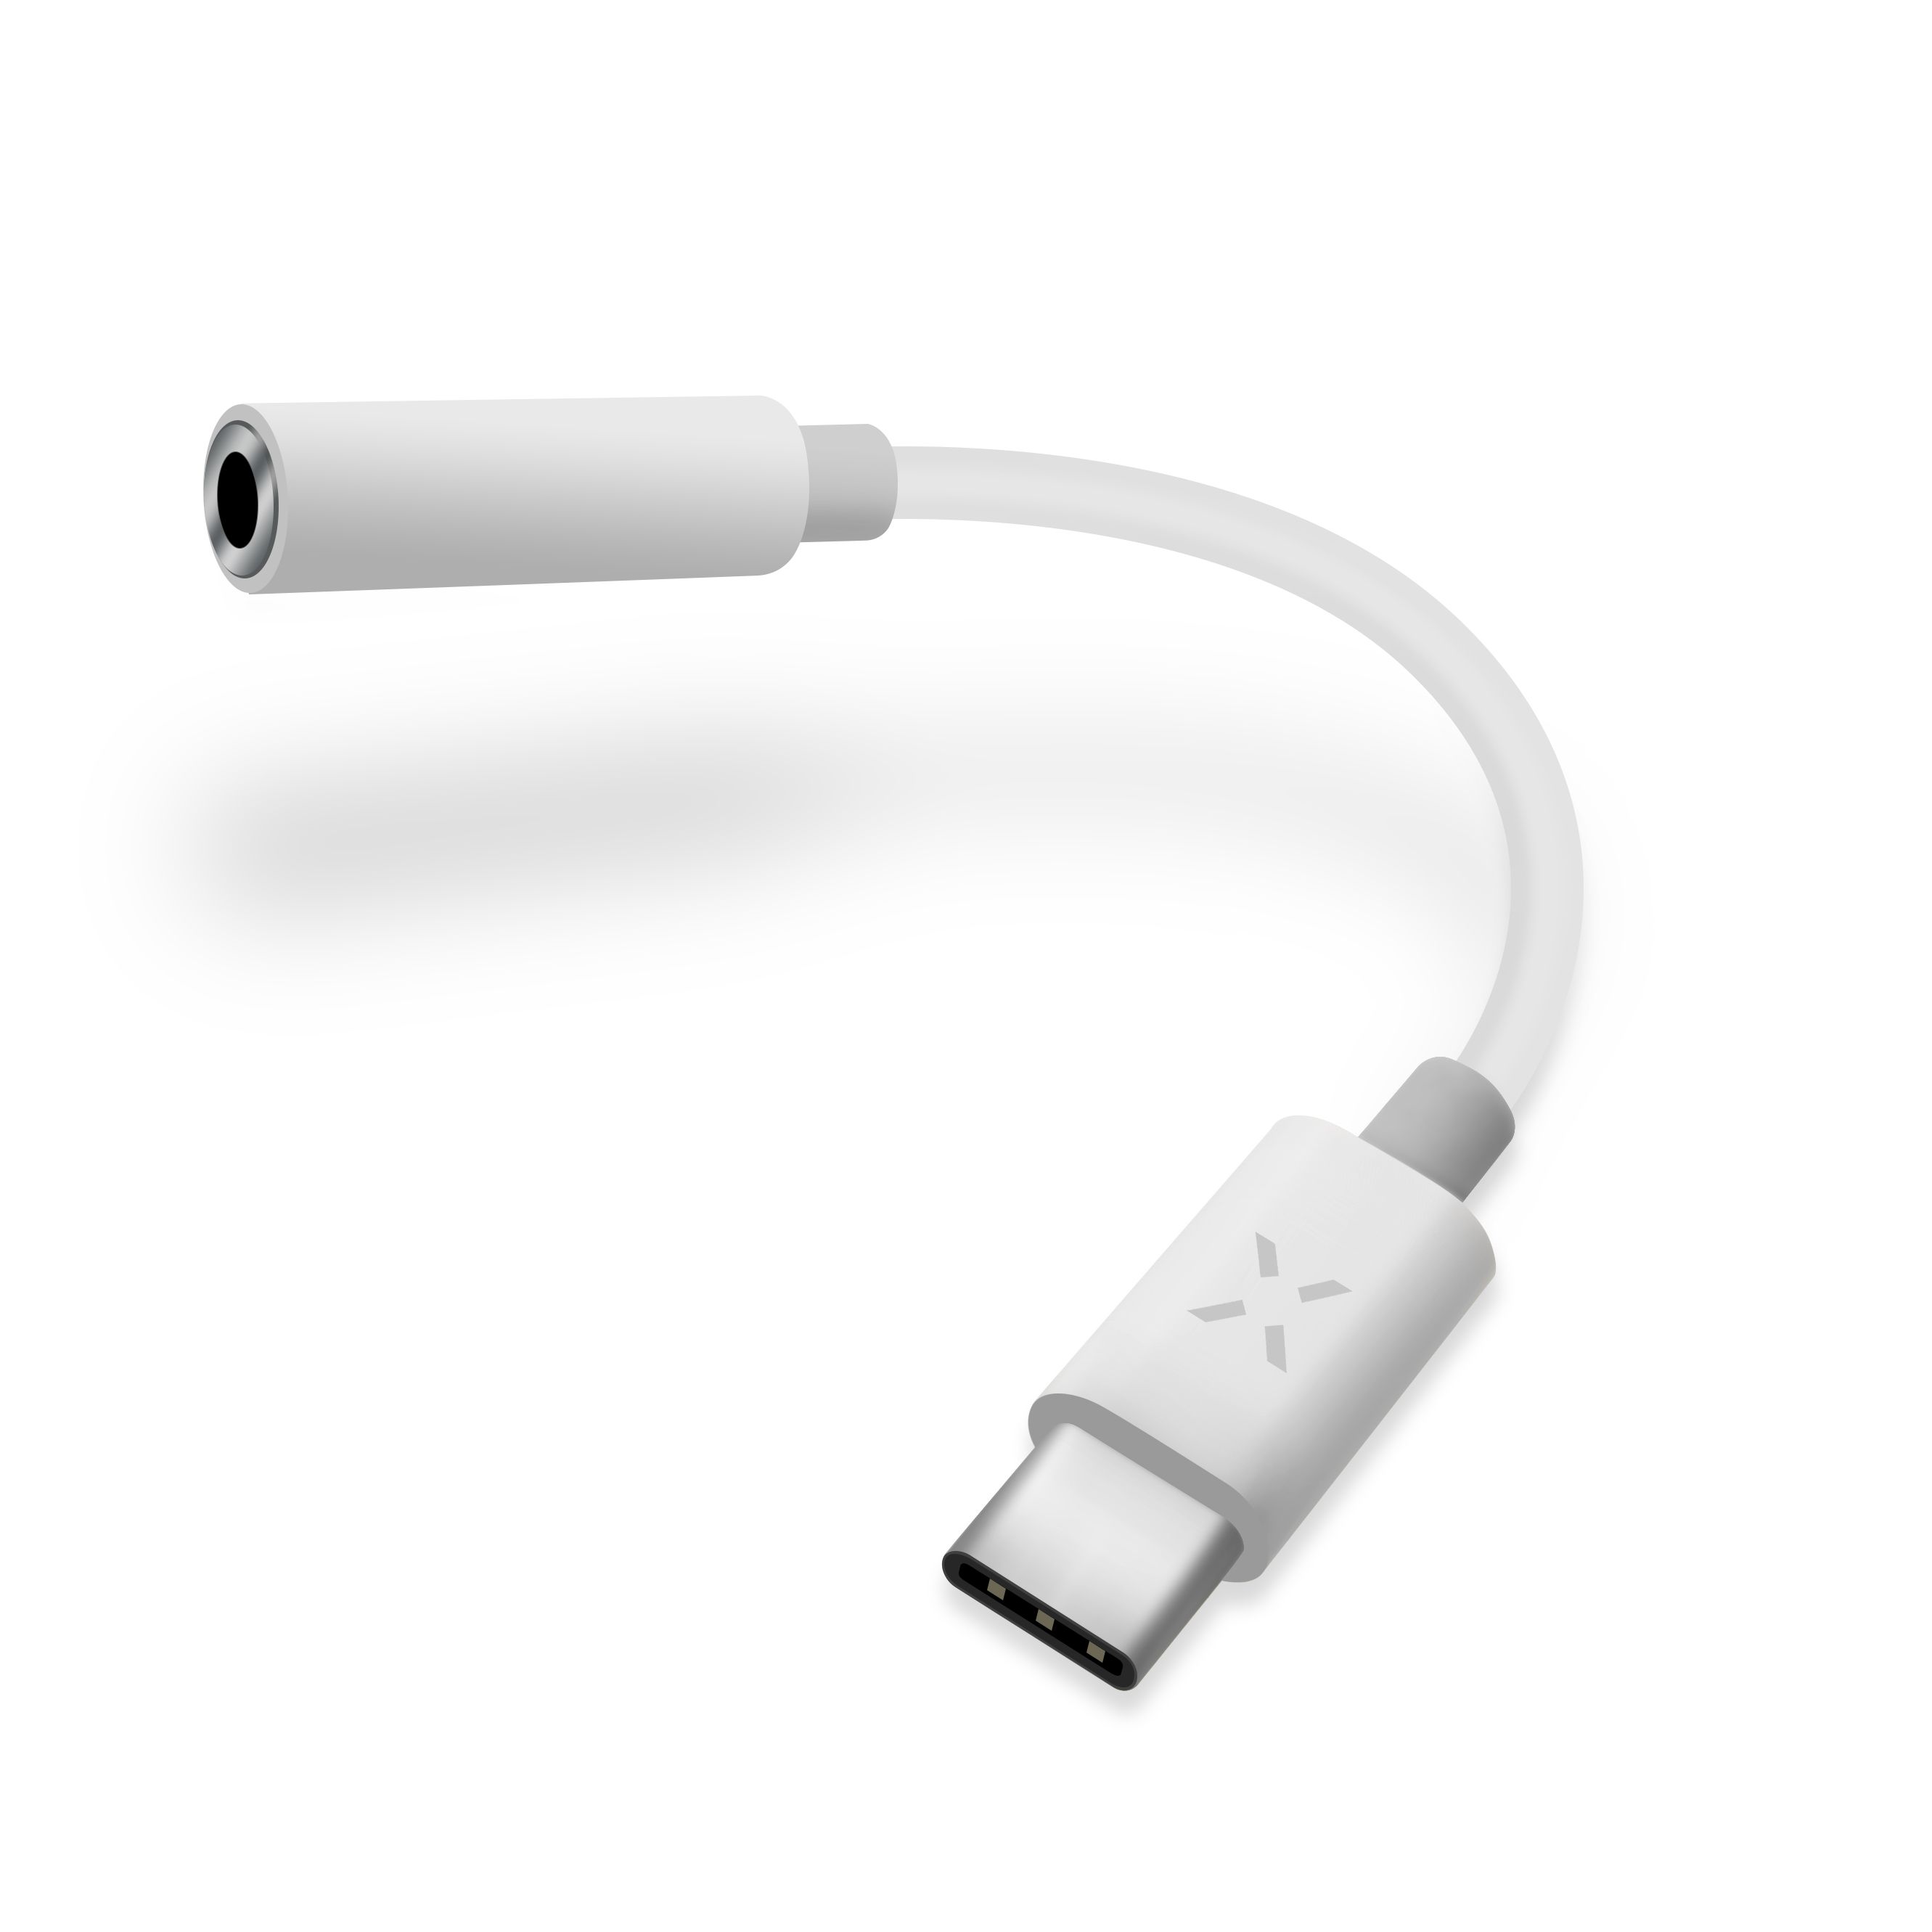 Redukce FIXED LINK pro připojení sluchátek z USB-C na 3,5mm jack s DAC chipem, bílá